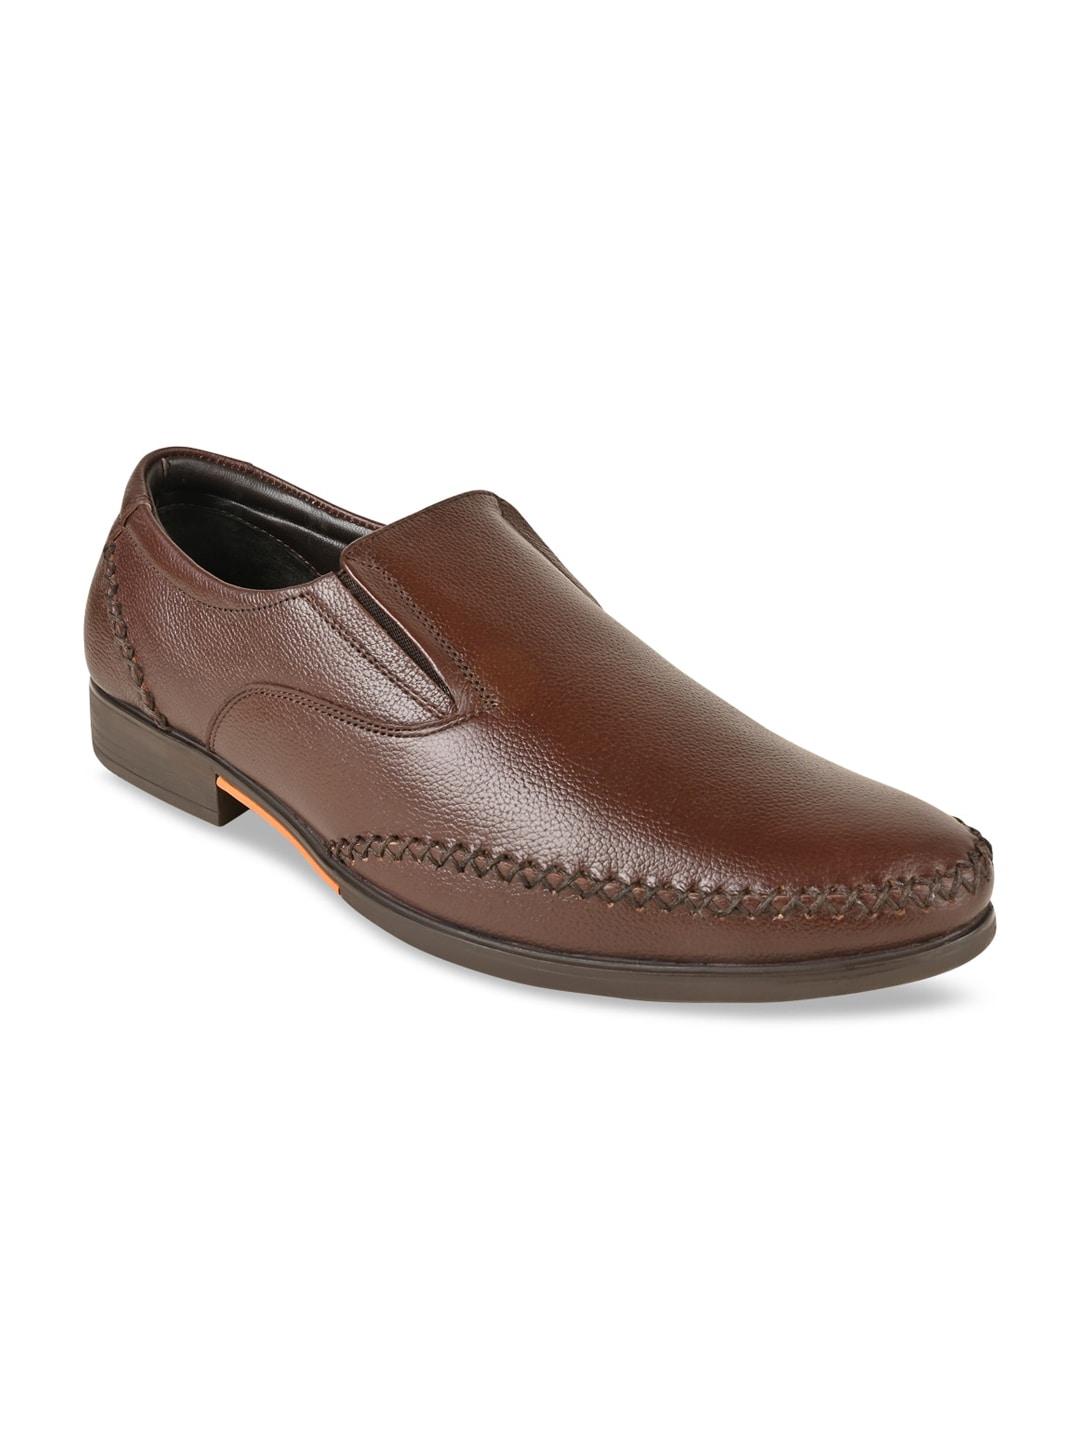 Regal Men Leather Formal Slip-On Shoes